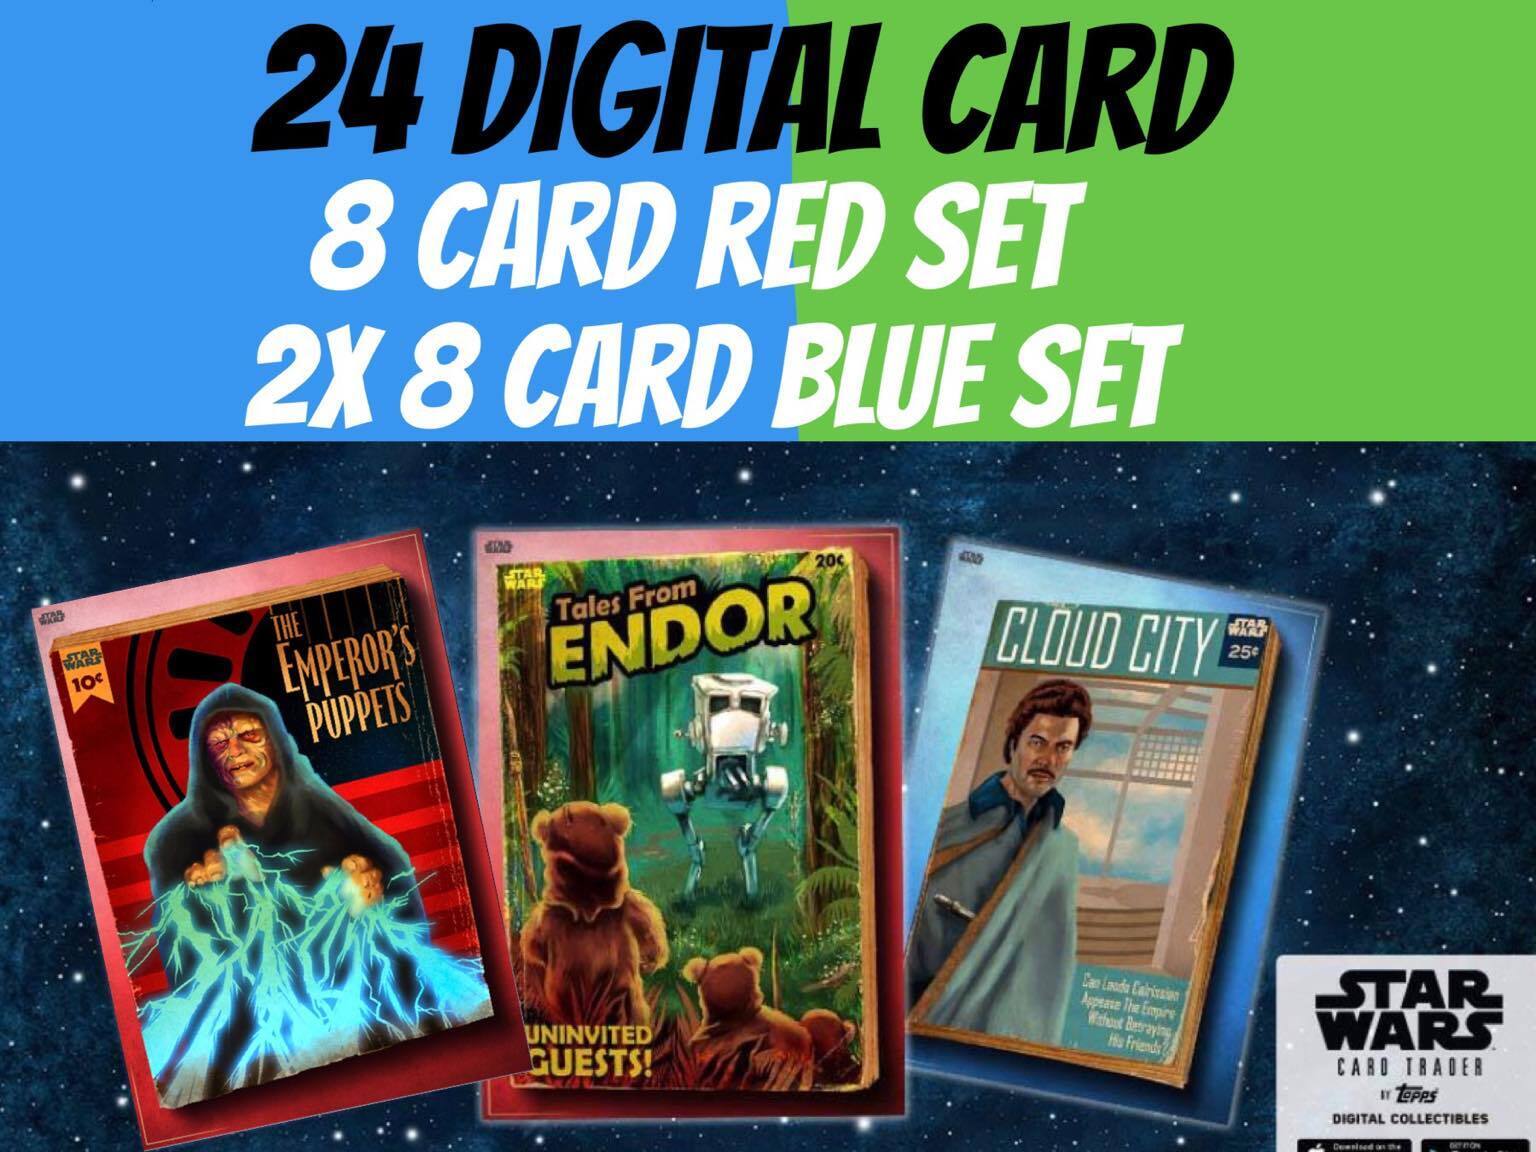 Topps Star Wars Card Trader Original Art Pulp Covers Robert Jimenez Red Blue Set